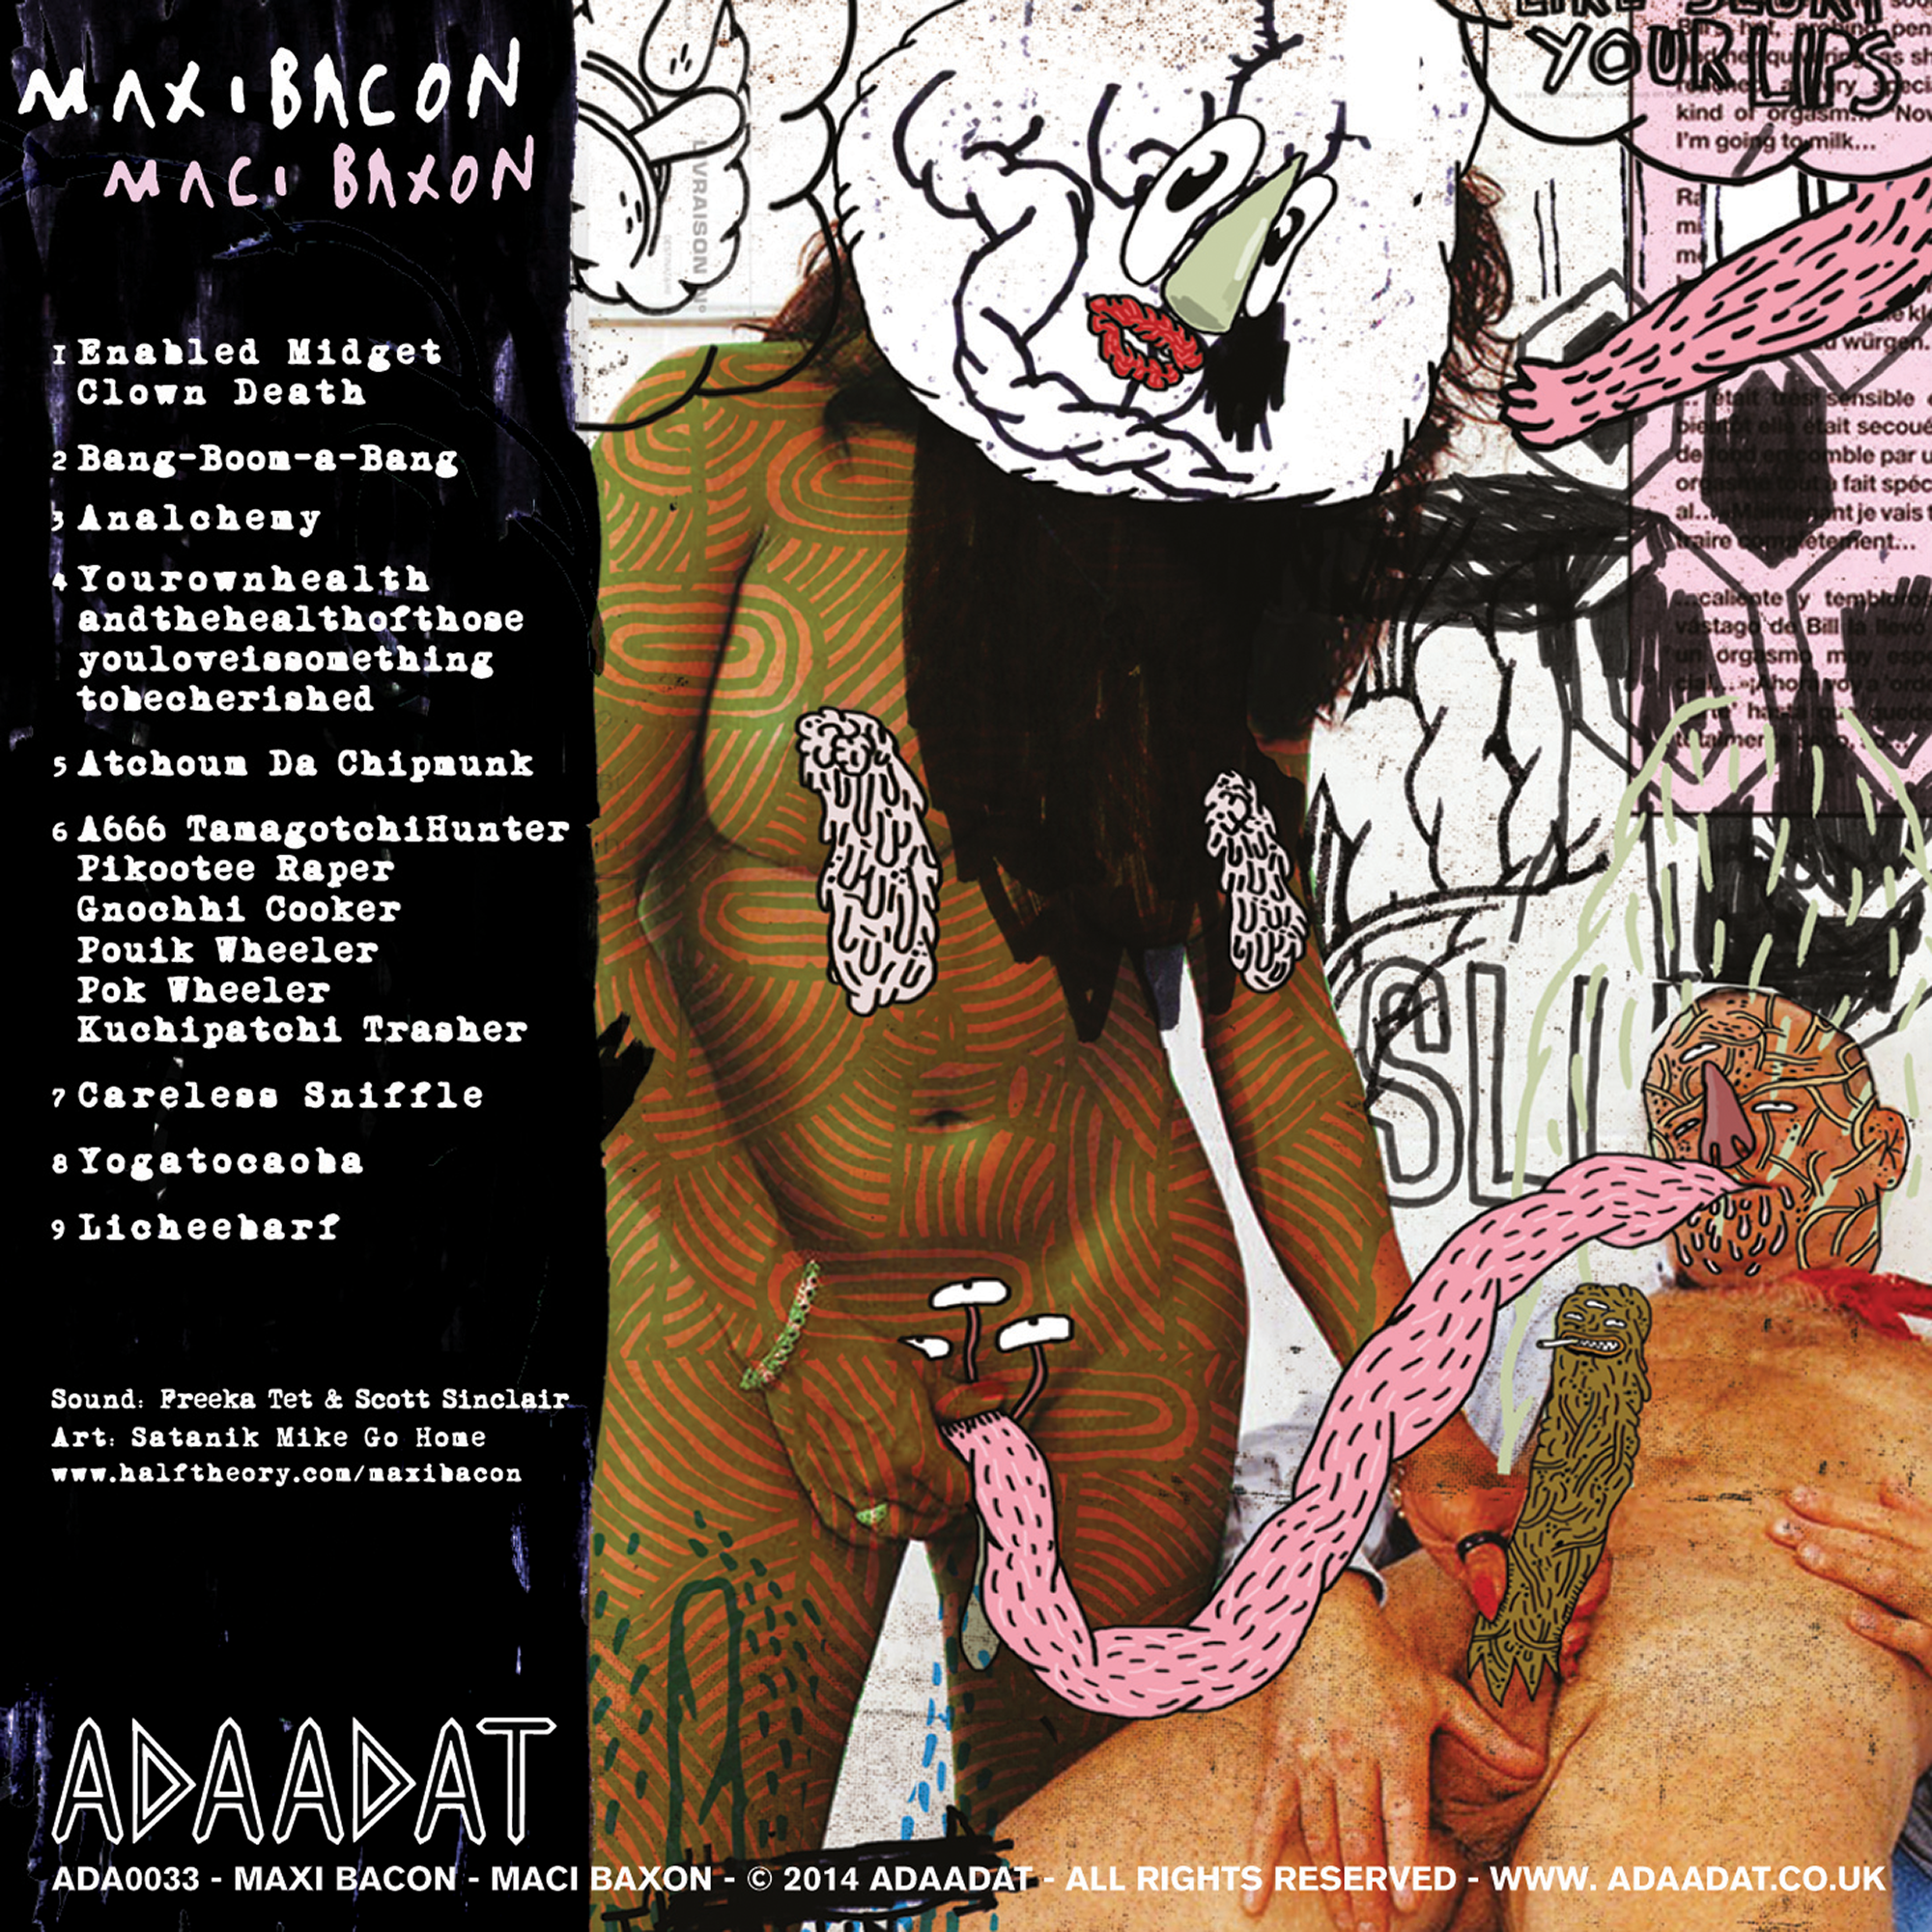 Maxi Bacon – Maci Baxon – 2014